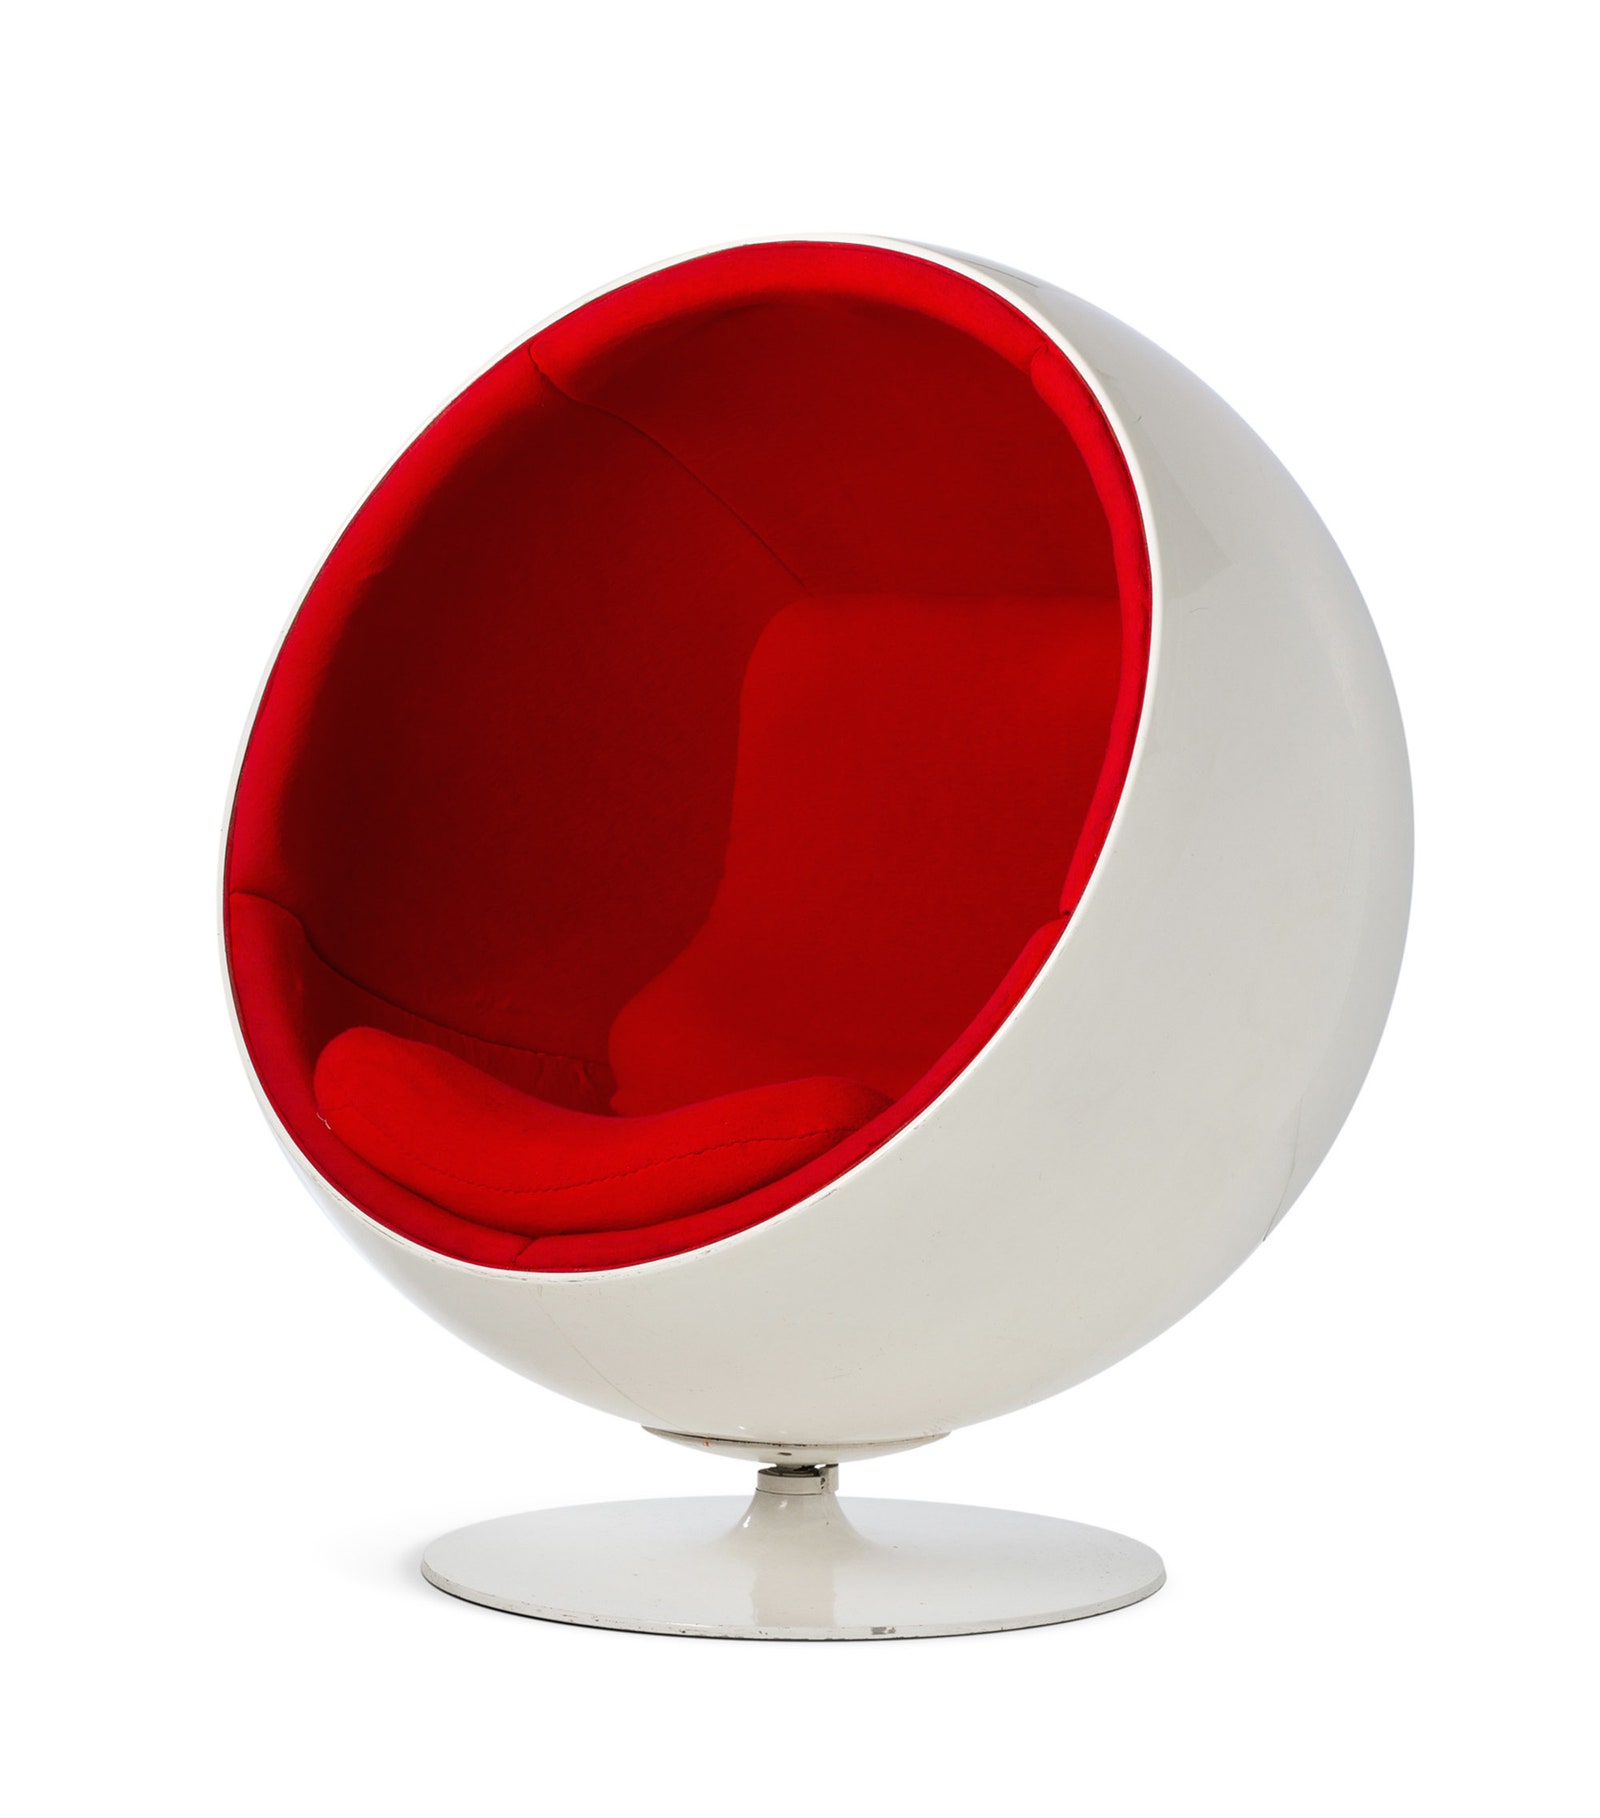 Кресло The Ball Chair дизайнер Ээро Аарнио.